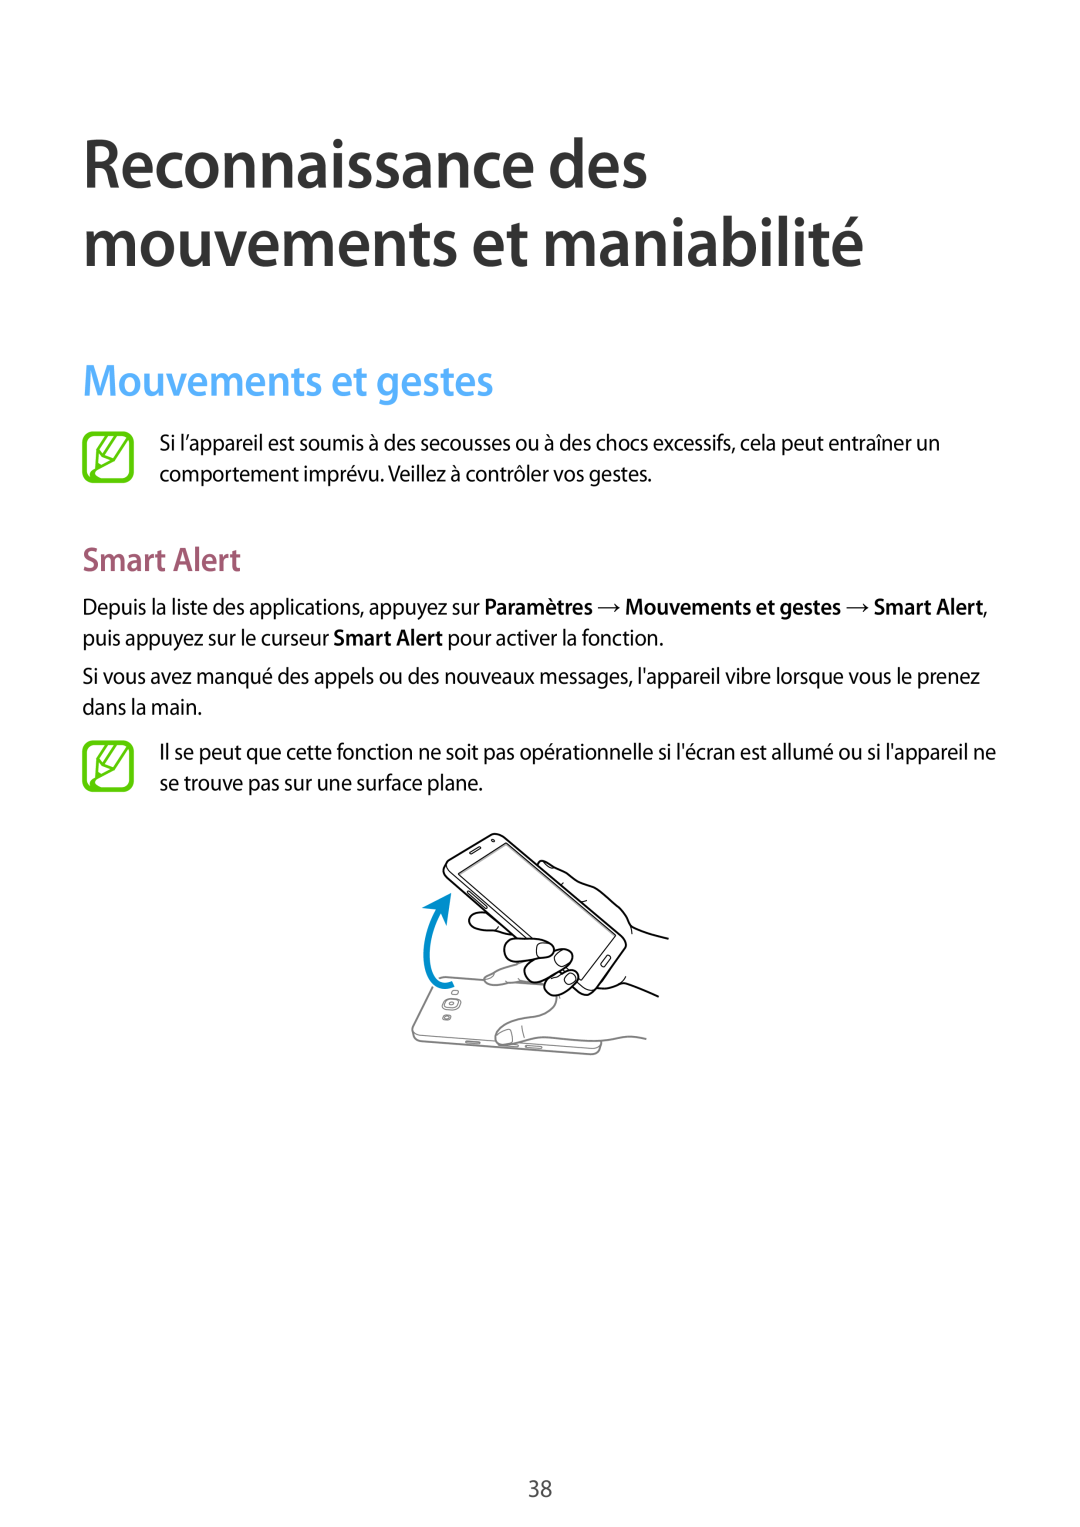 Samsung SM-A300FZKUSFR, SM-A300FZSUXEF Mouvements et gestes, Smart Alert, Reconnaissance des mouvements et maniabilité 